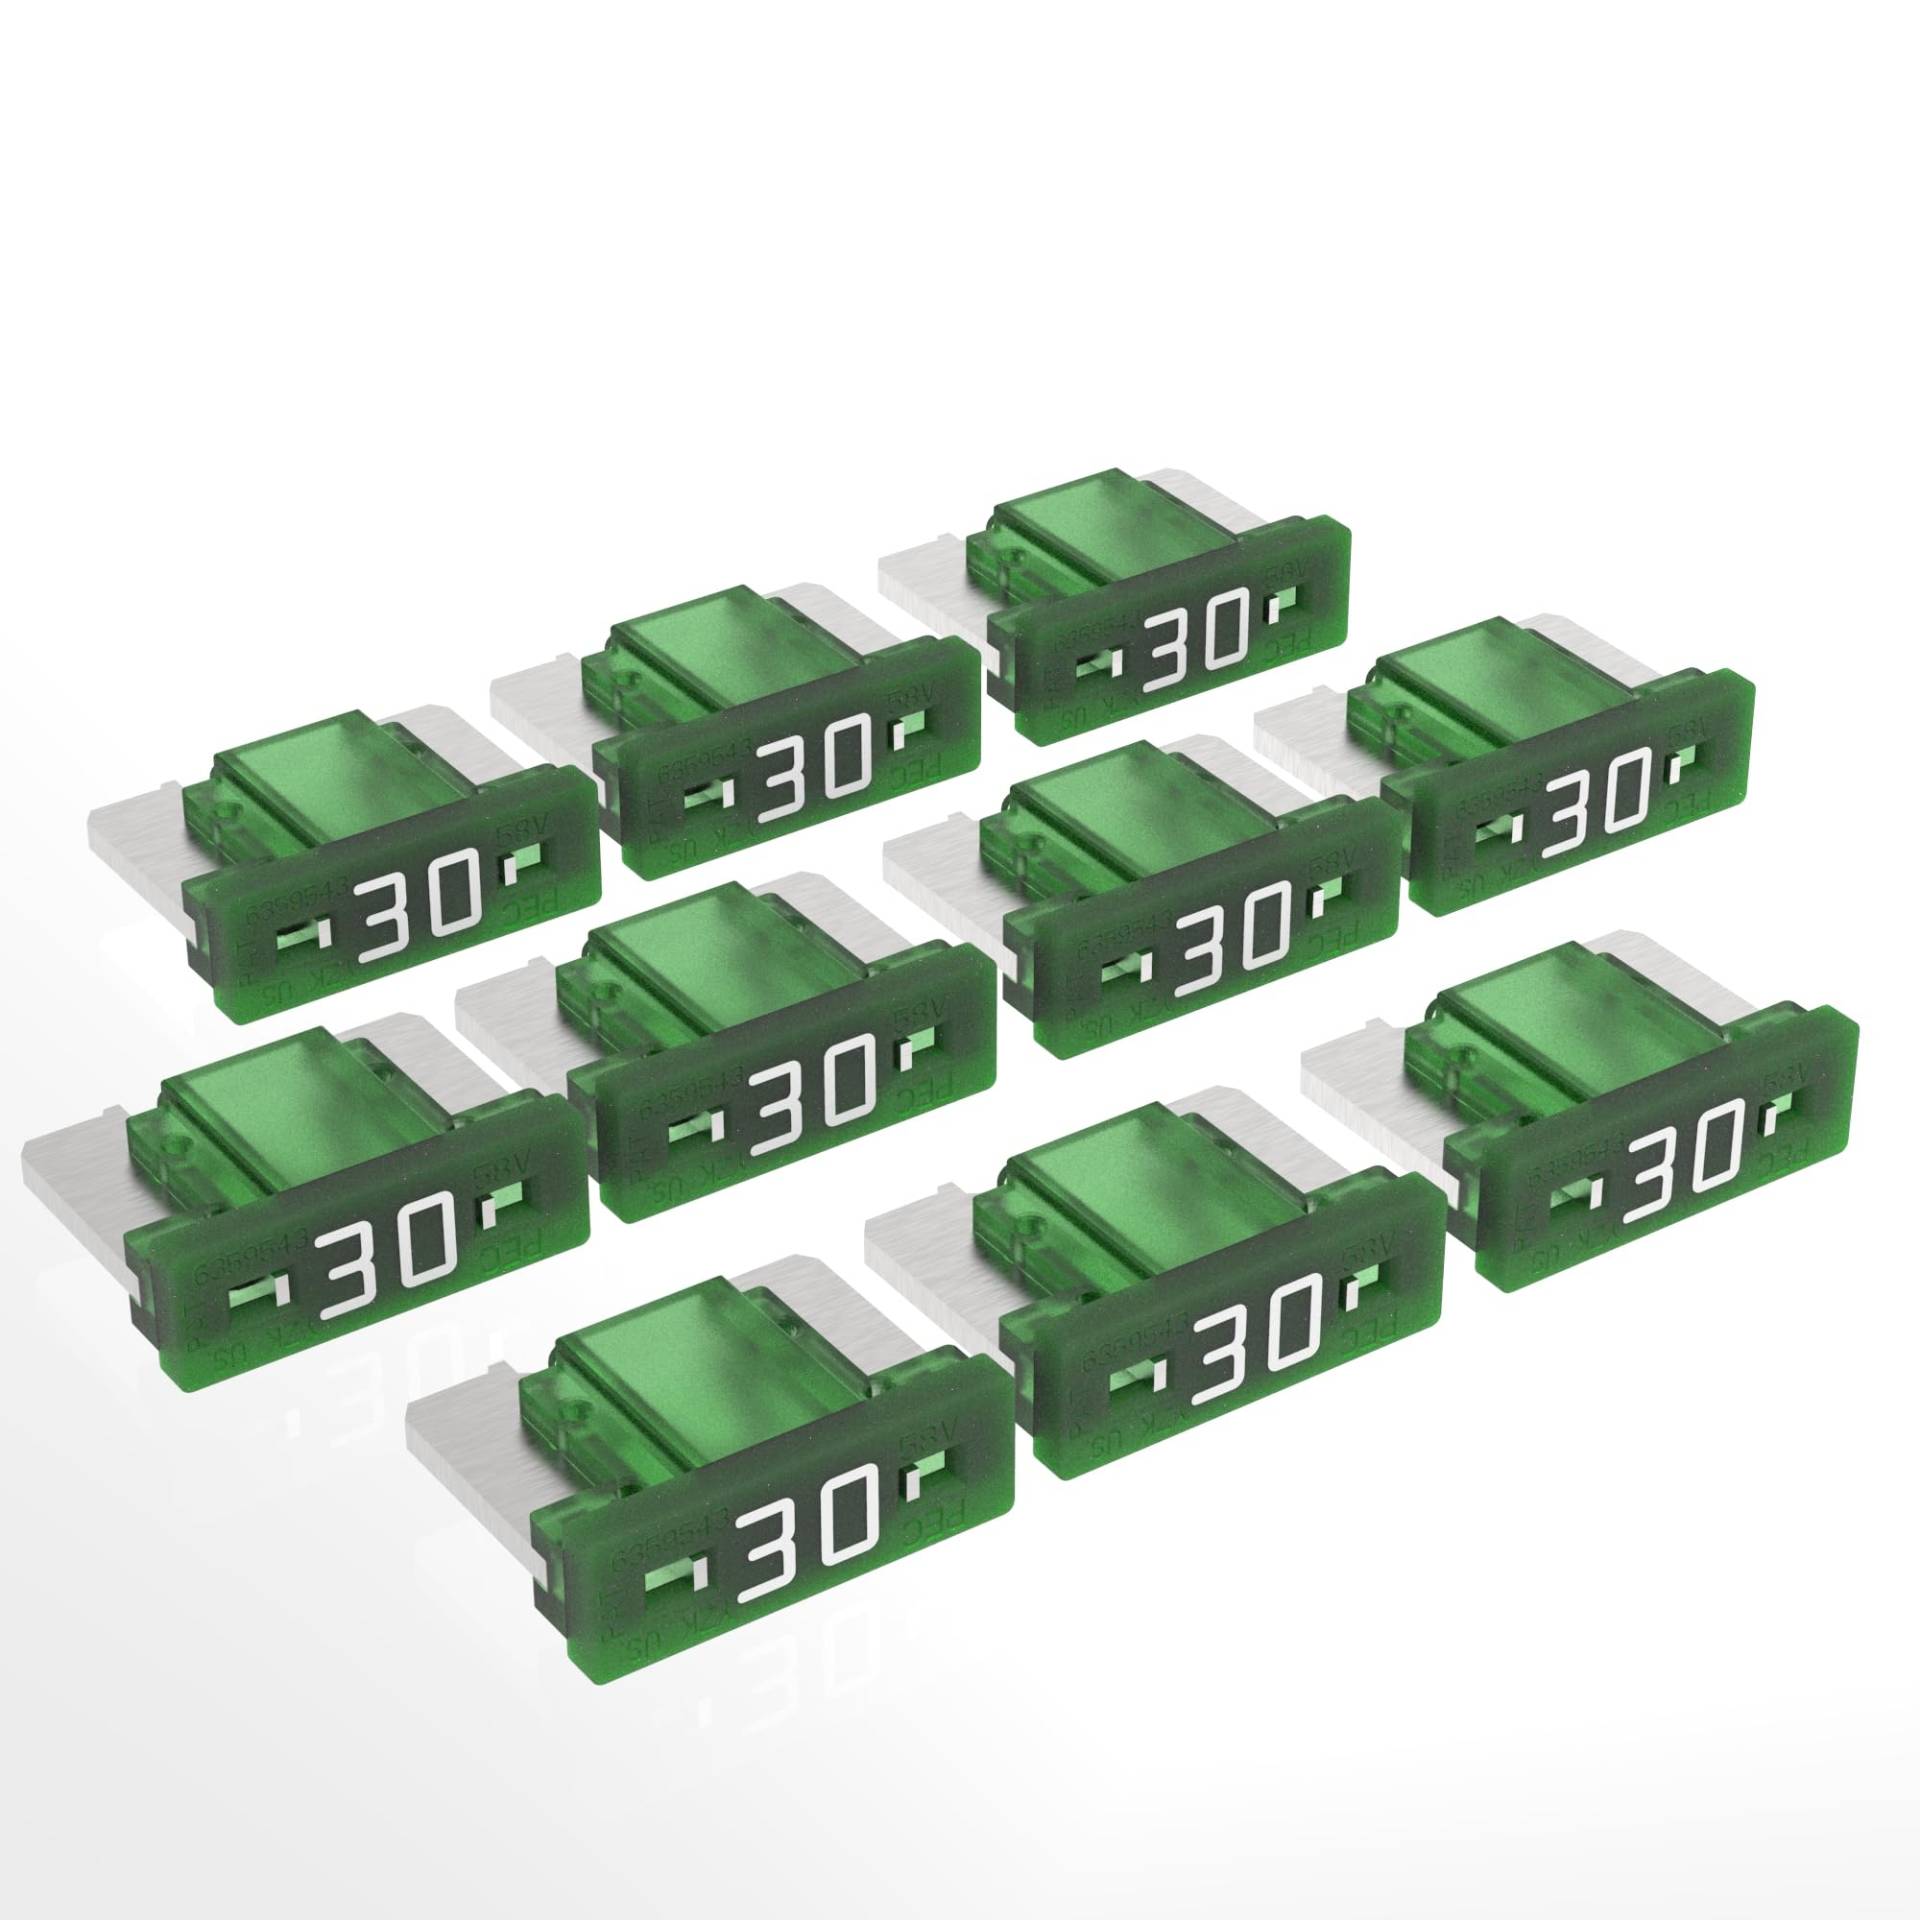 AUPROTEC Mini LP Kfz Sicherungen Flachstecksicherungen 2A - 30A Auswahl: 30A Ampere grün, 10 Stück von AUPROTEC